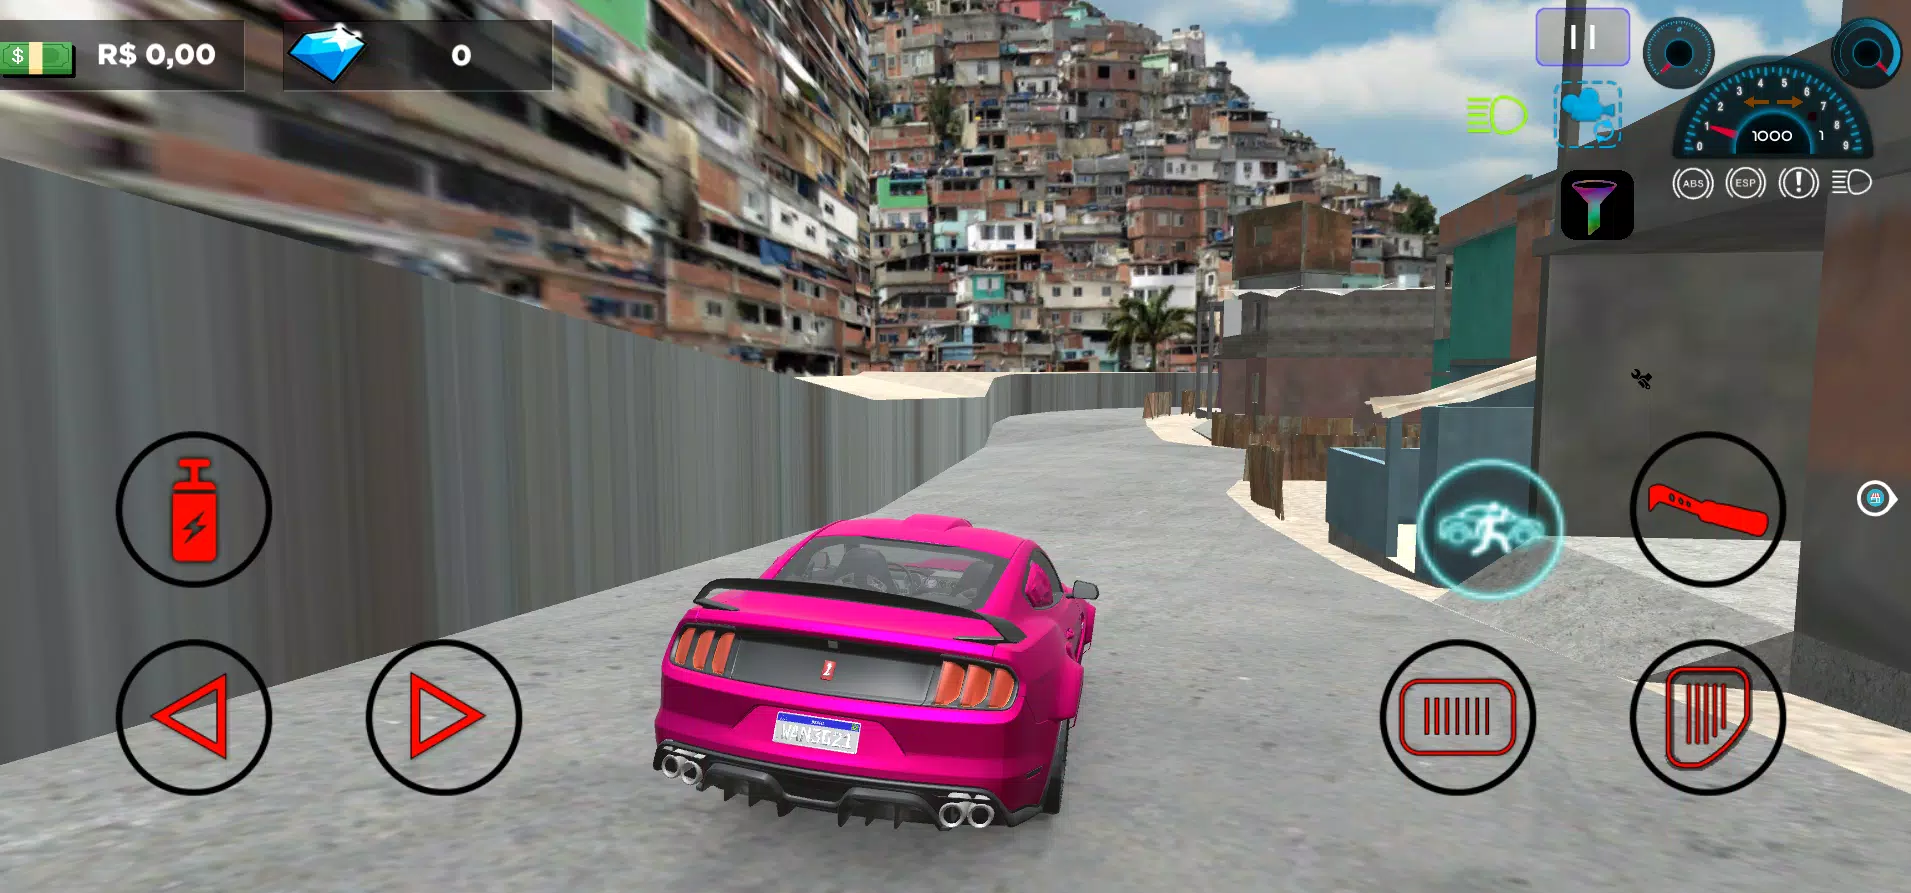 Fest Car Brasil 2 - APK Download for Android